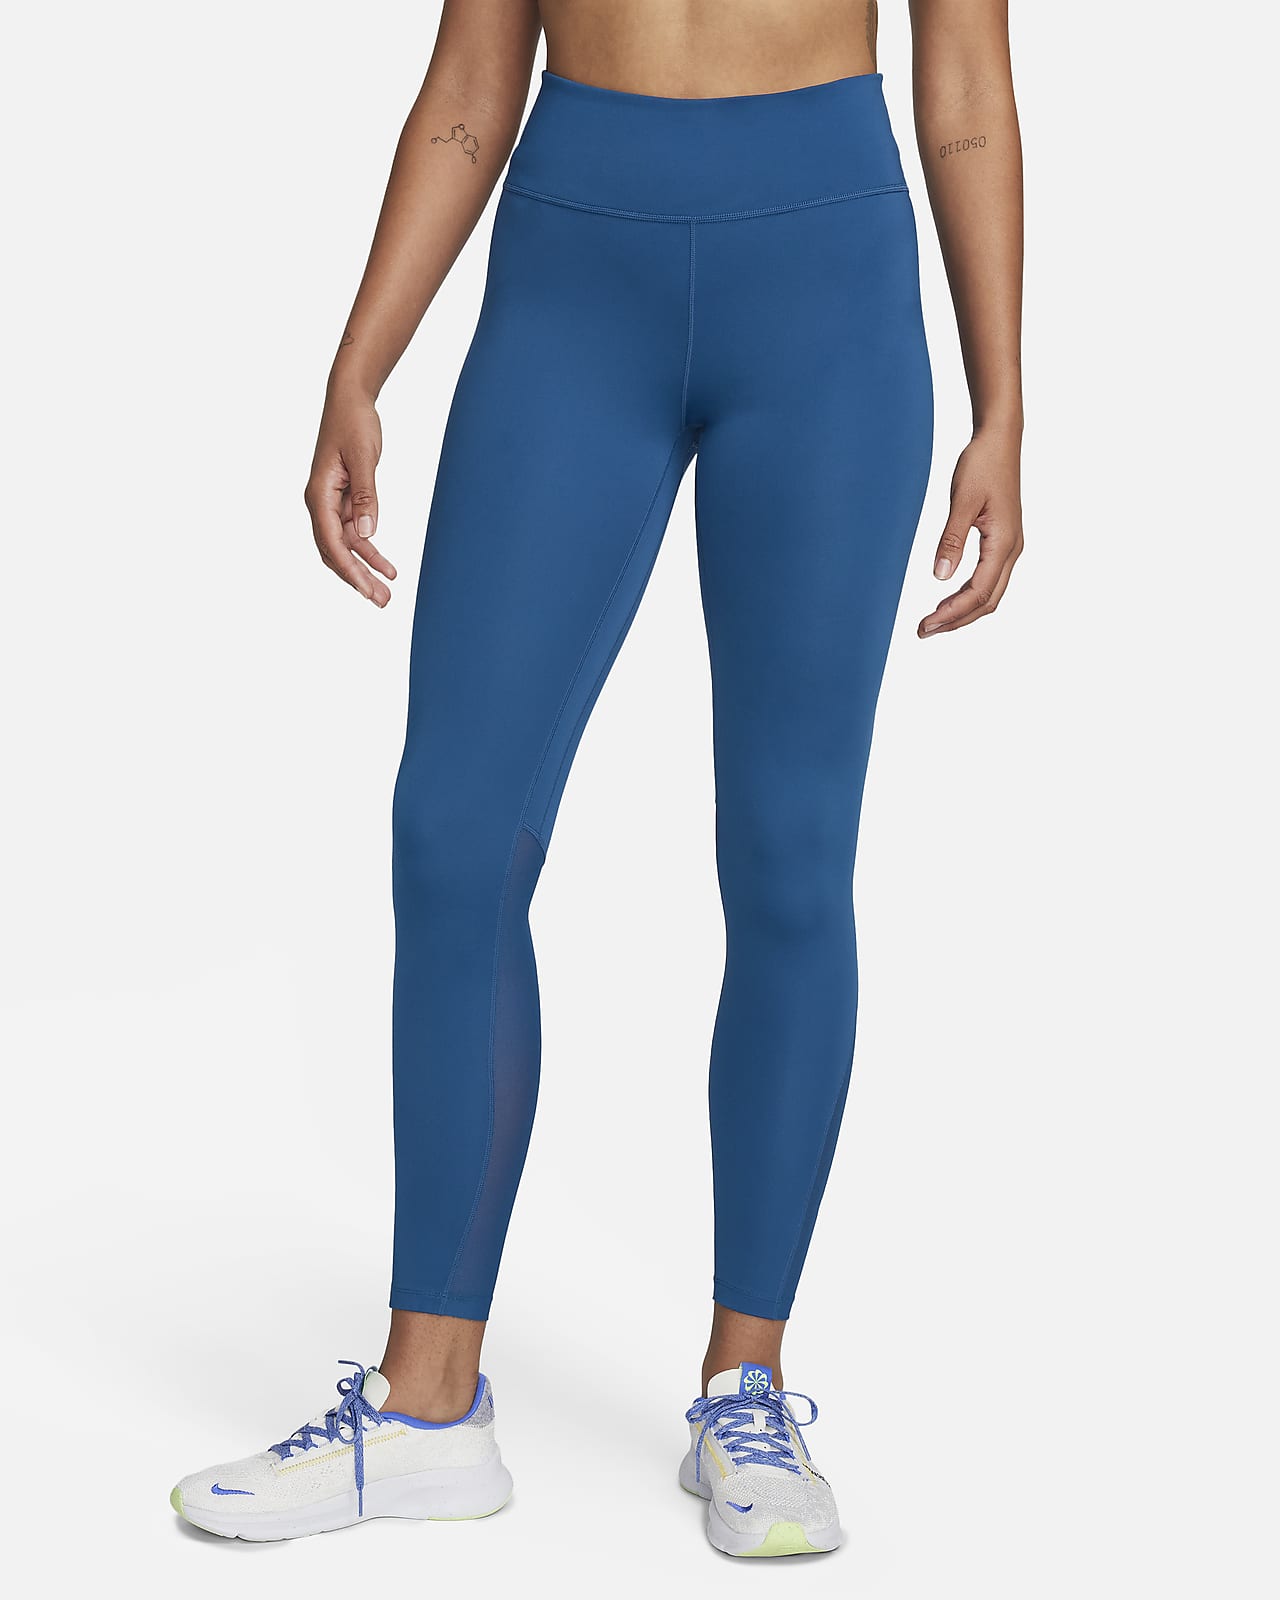 Nike Damskie legginsy 7/8 z wysokim stanem i ściągaczami Nike Yoga - Fiolet  - Ceny i opinie 